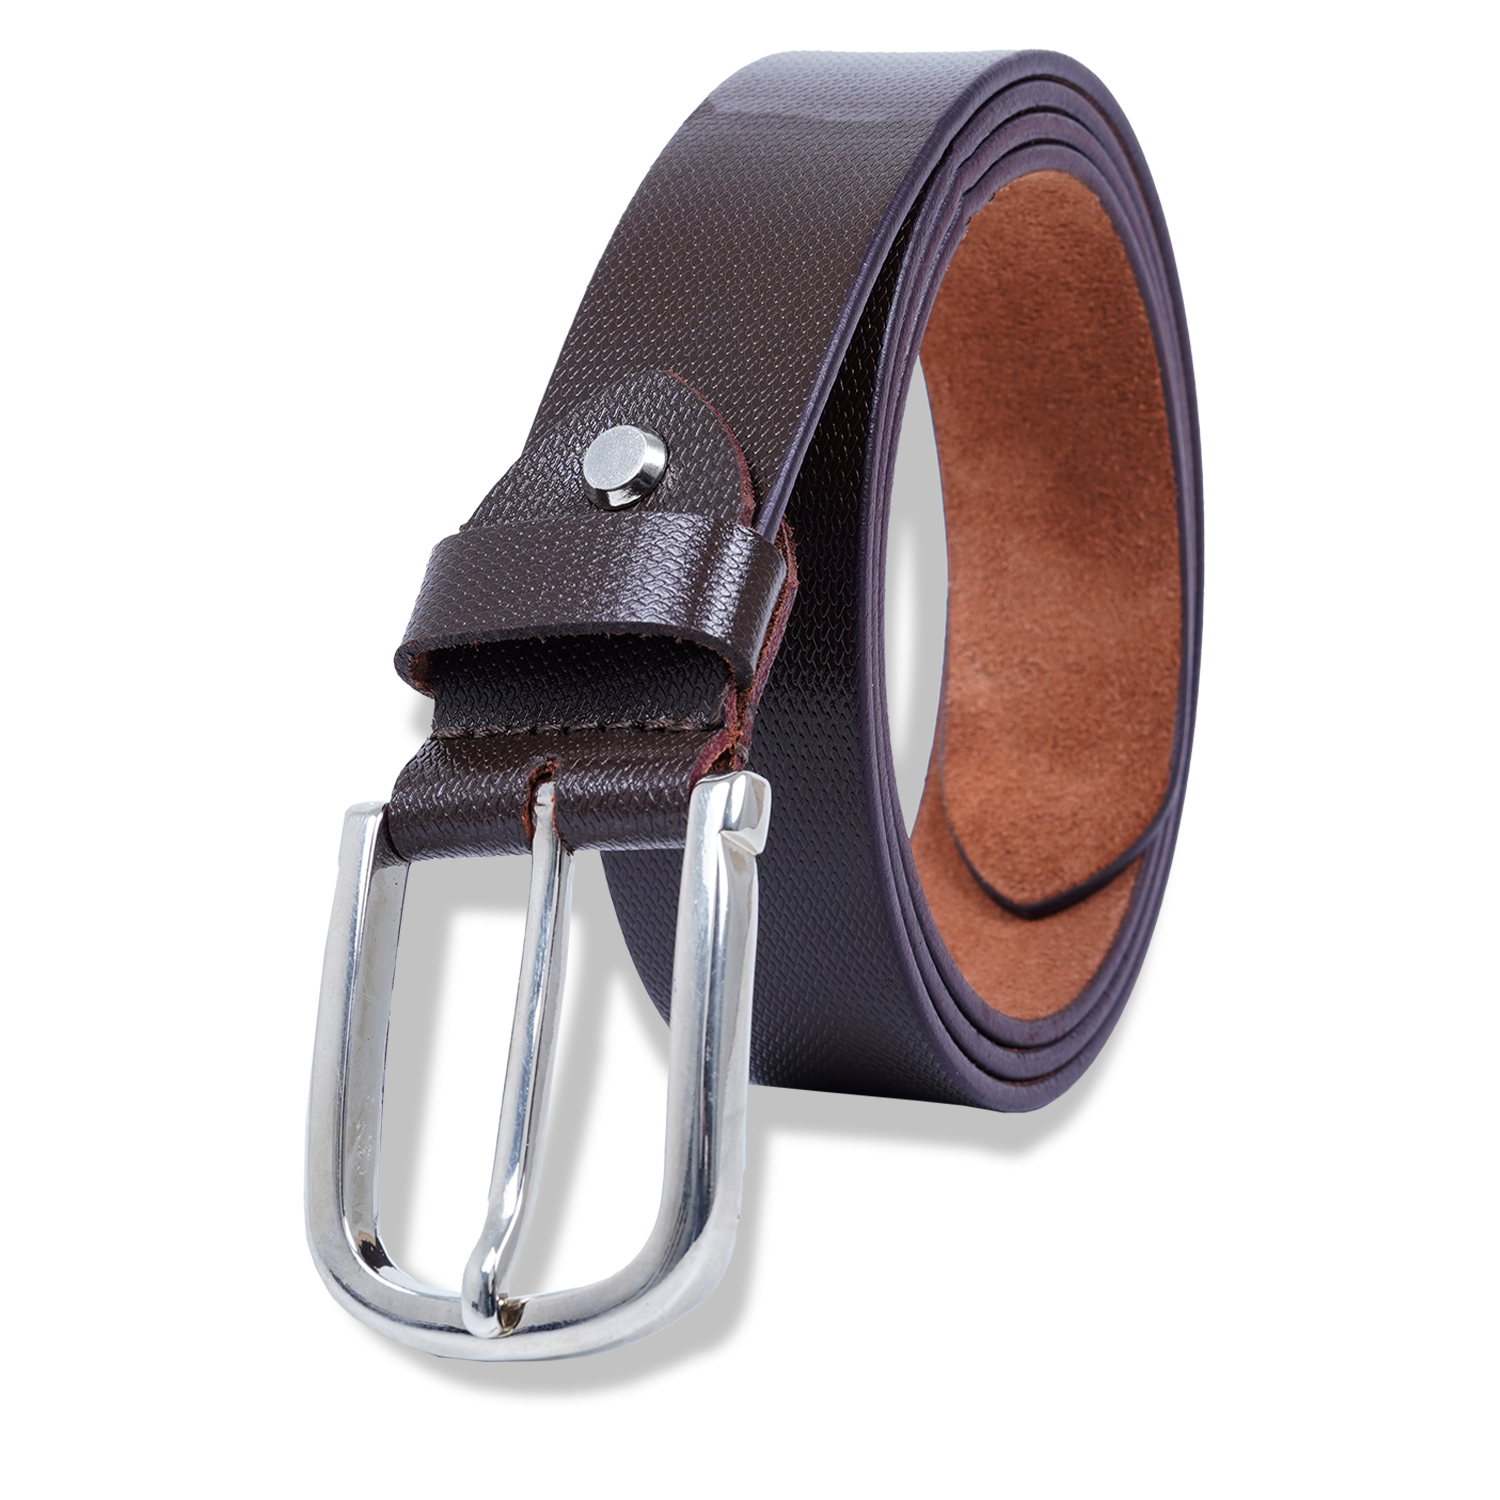  Genuine Leather Belt for Men |Brown| Formal Belt-asset-276